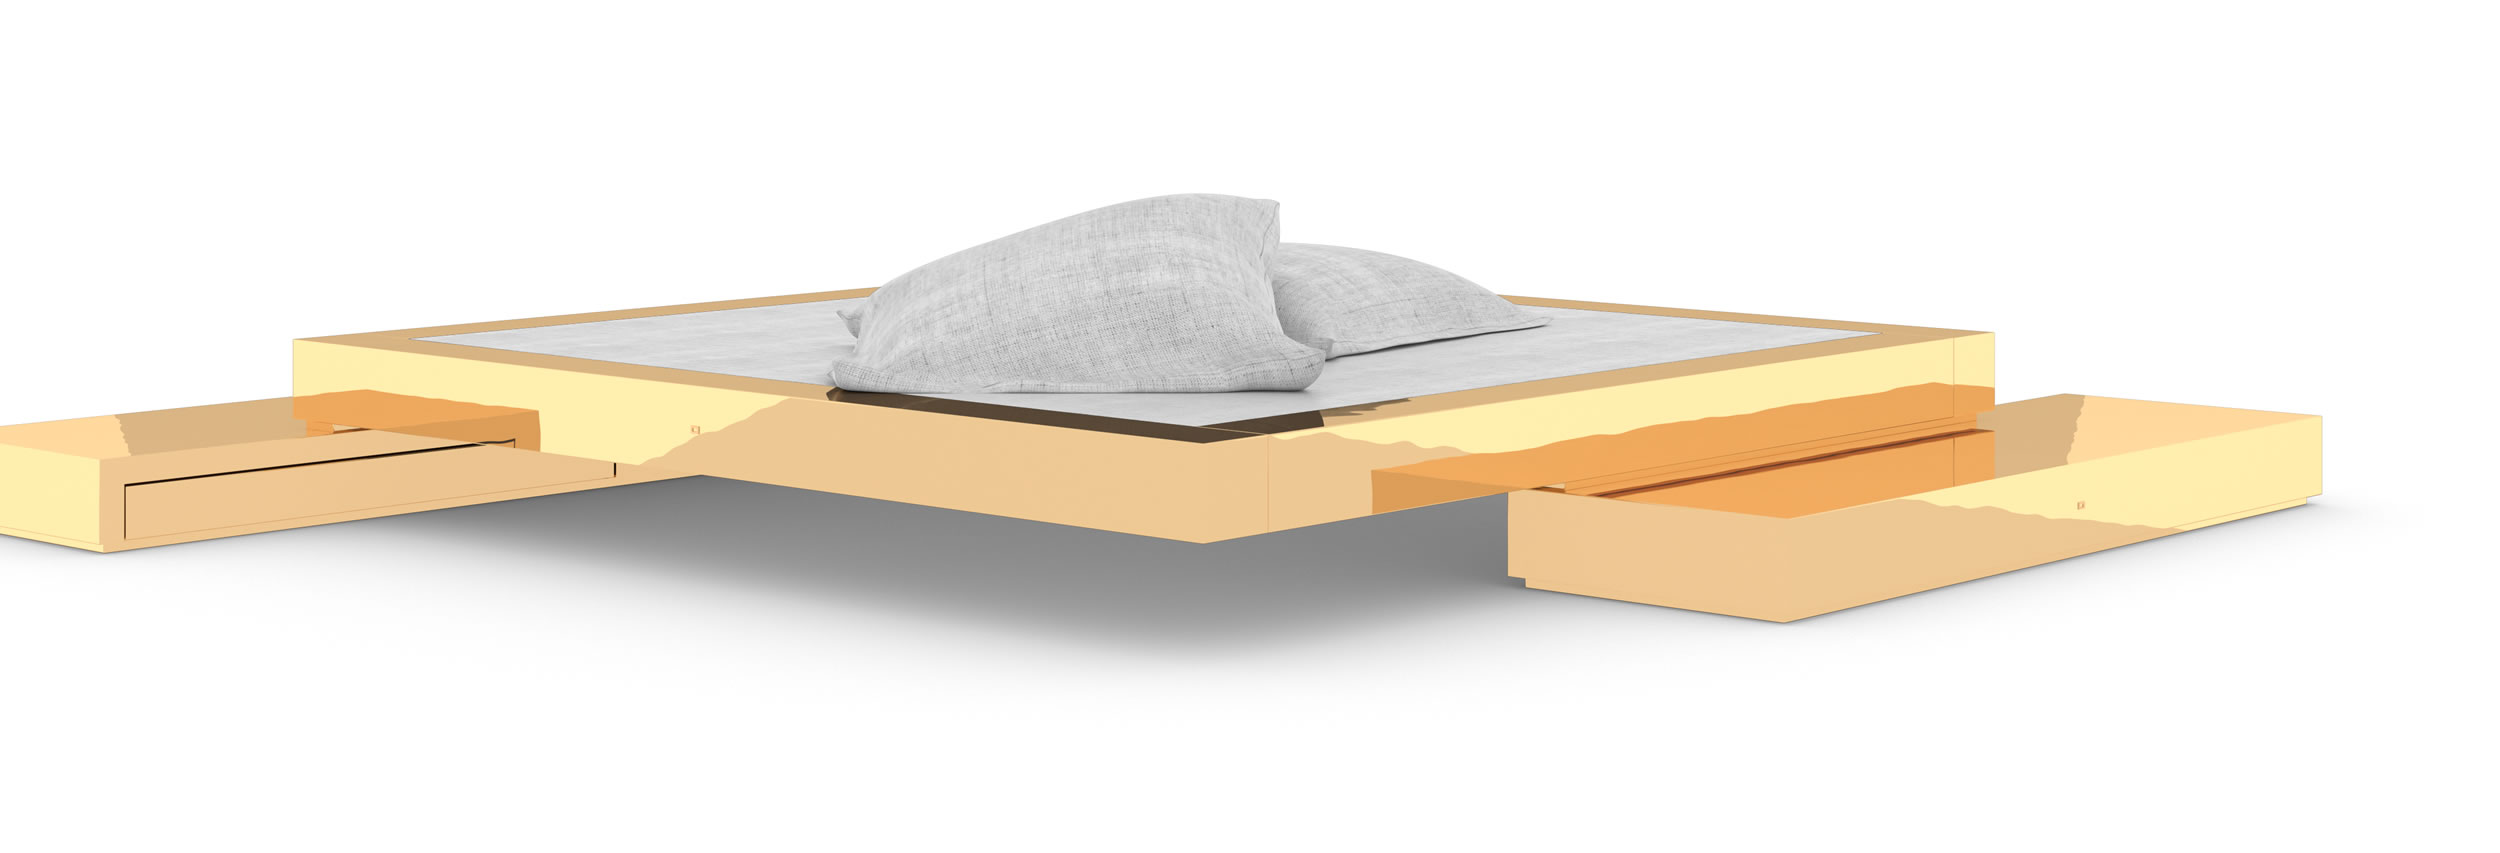 Design Bett Sideboards Exklusives Gold Handgefertigt Luxus Einzigartig Puristisch InteriorFELIX SCHWAKE